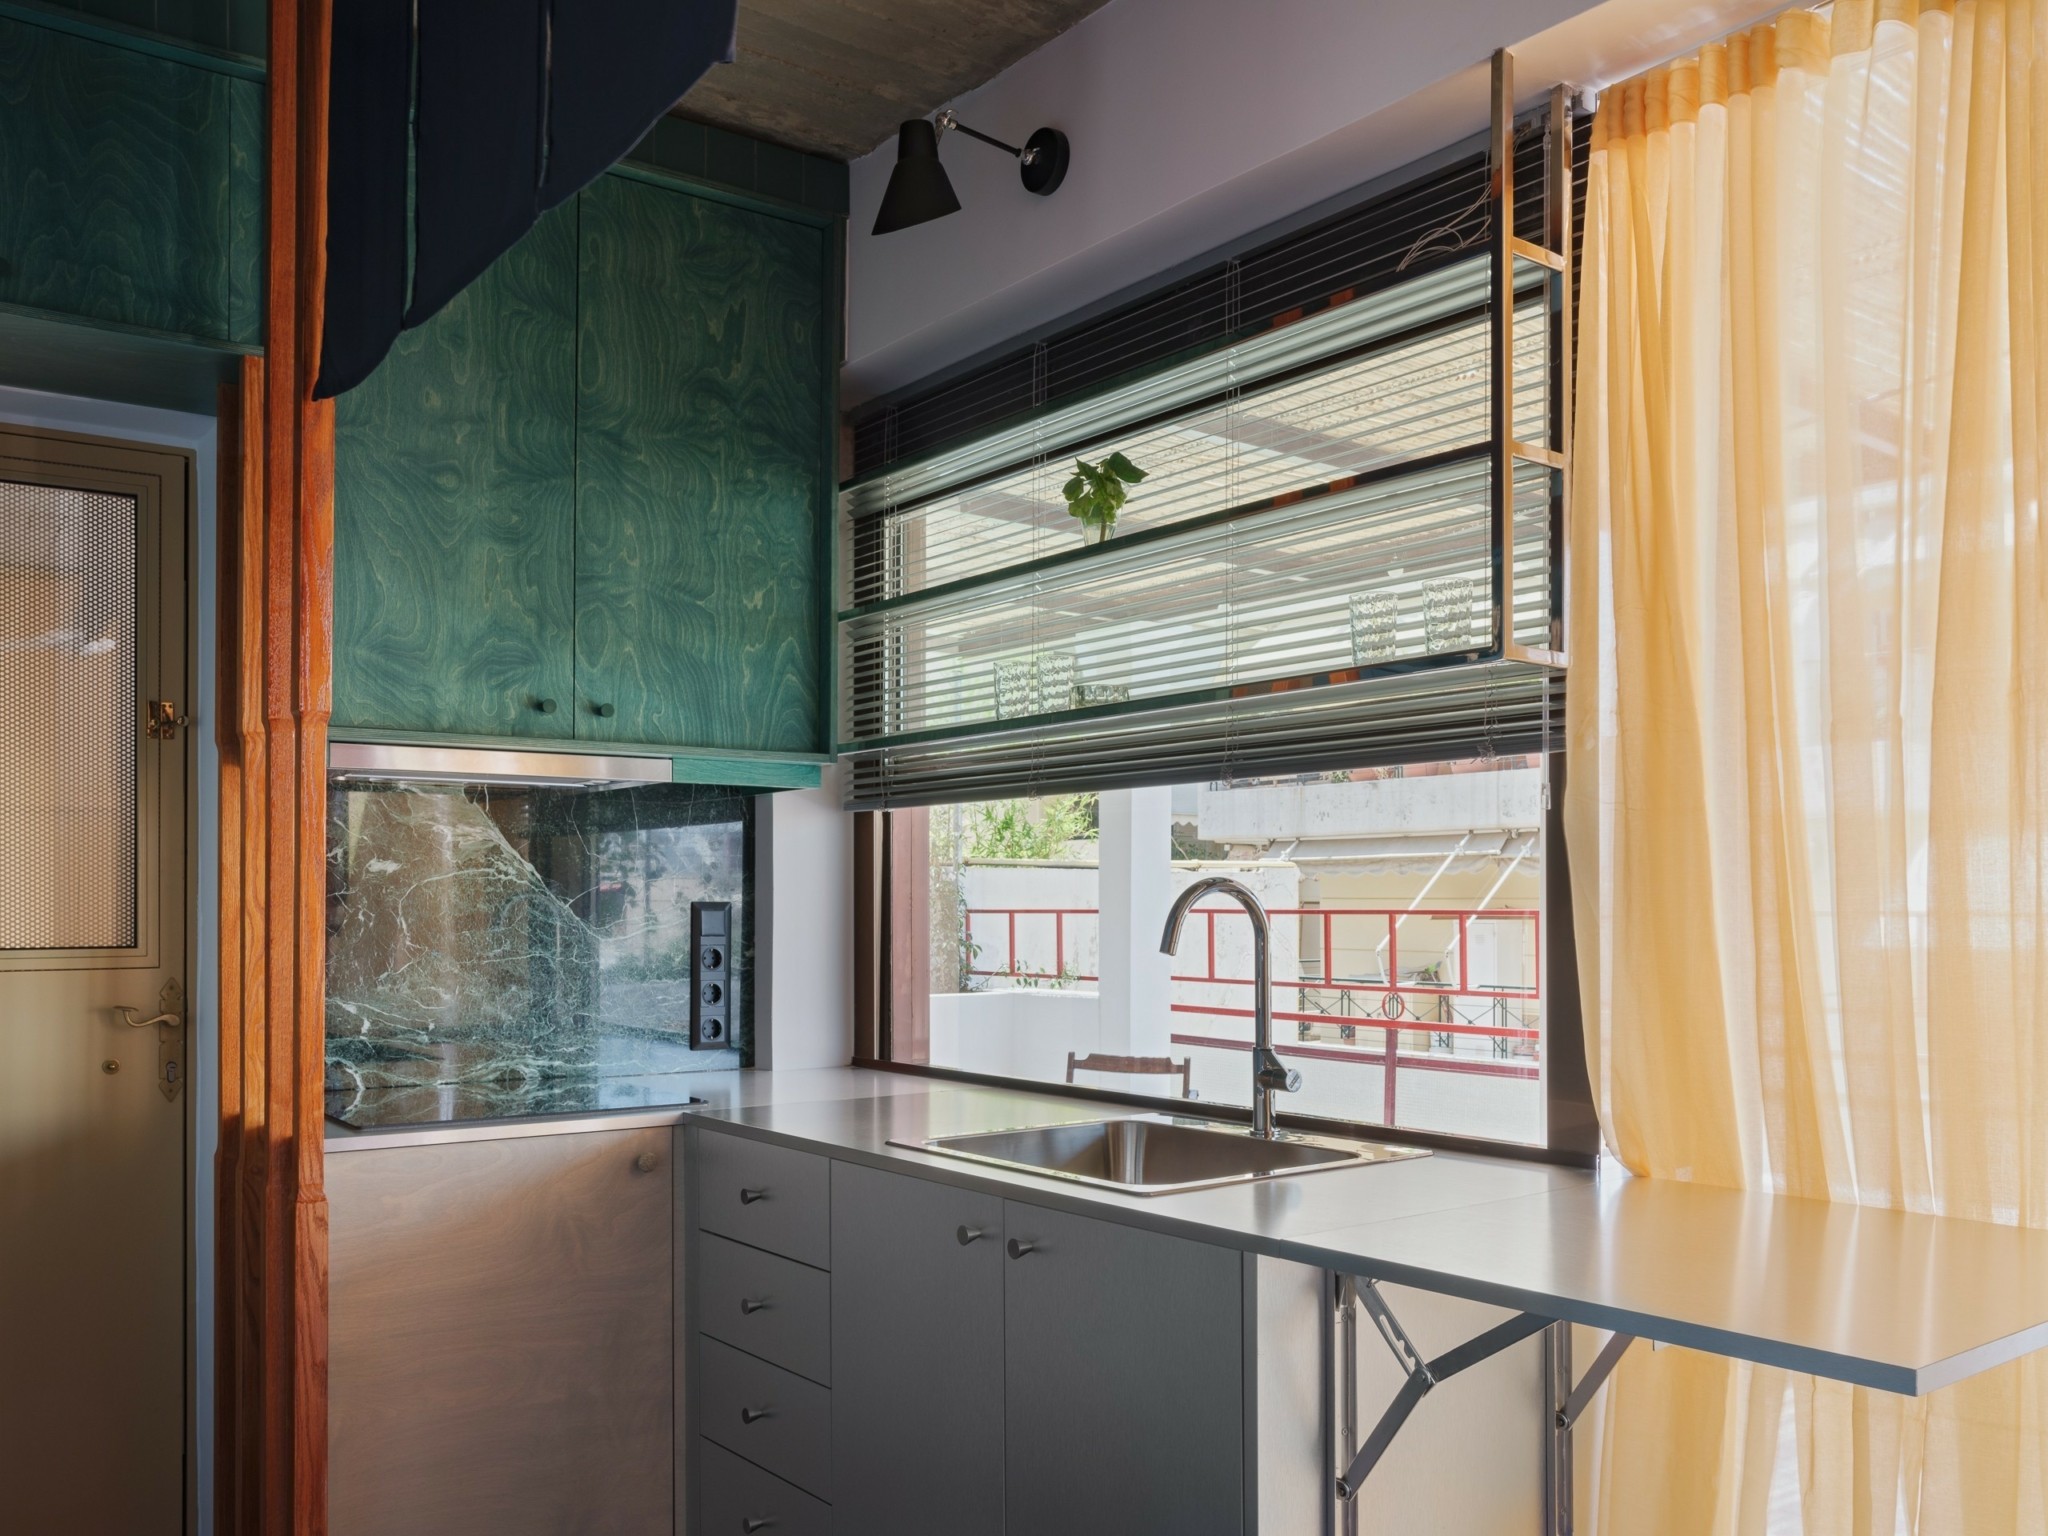 Πώς ένα διαμέρισμα 22 τ.μ. στο Παγκράτι έγινε ένα πλήρες μικρό σπίτι – Υποψήφιο στα Οσκαρ αρχιτεκτονικής